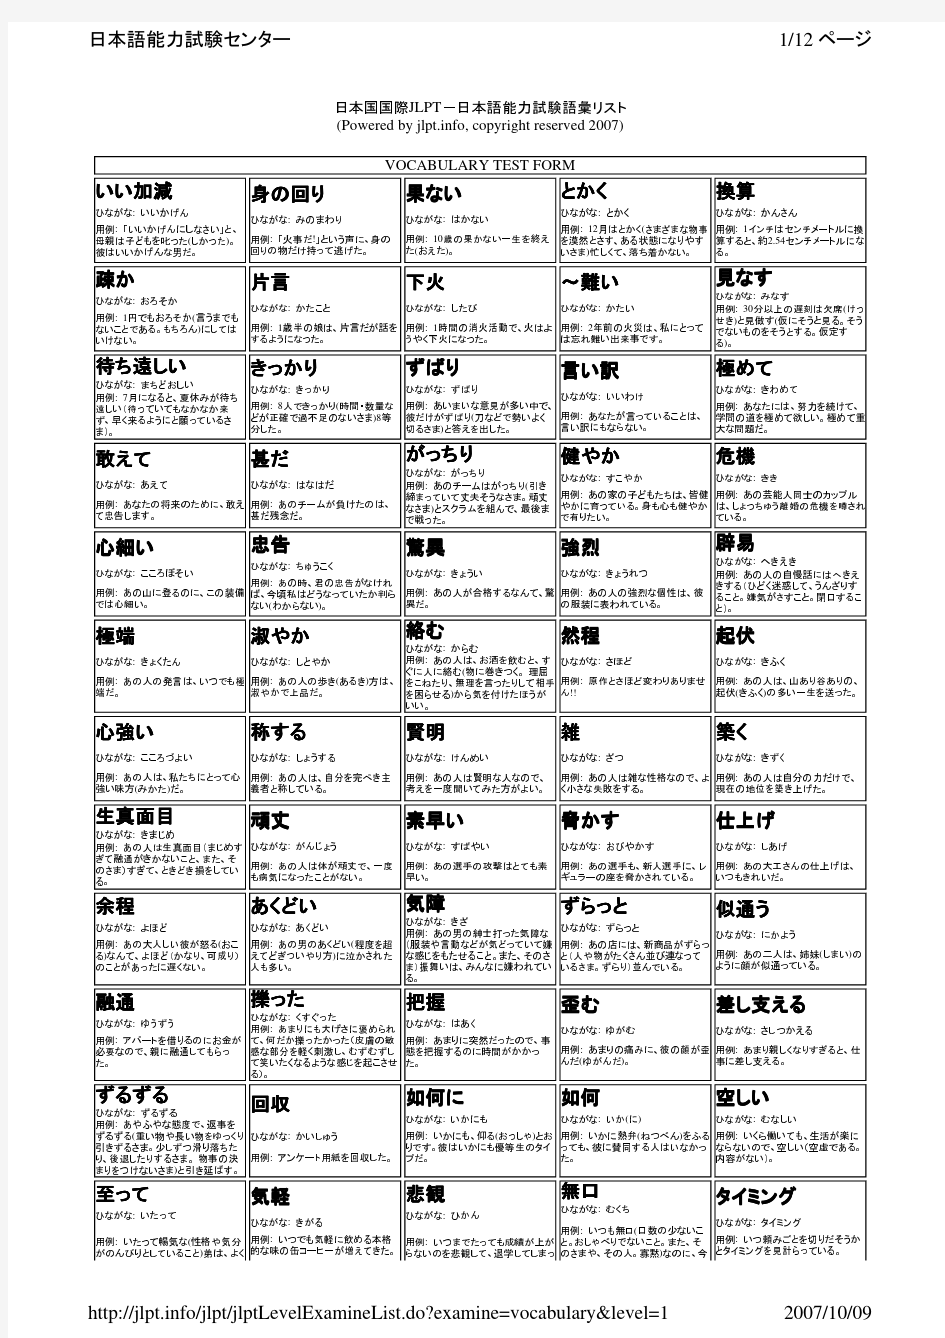 日语一级词汇总览(日语能力考试中心官方资料)